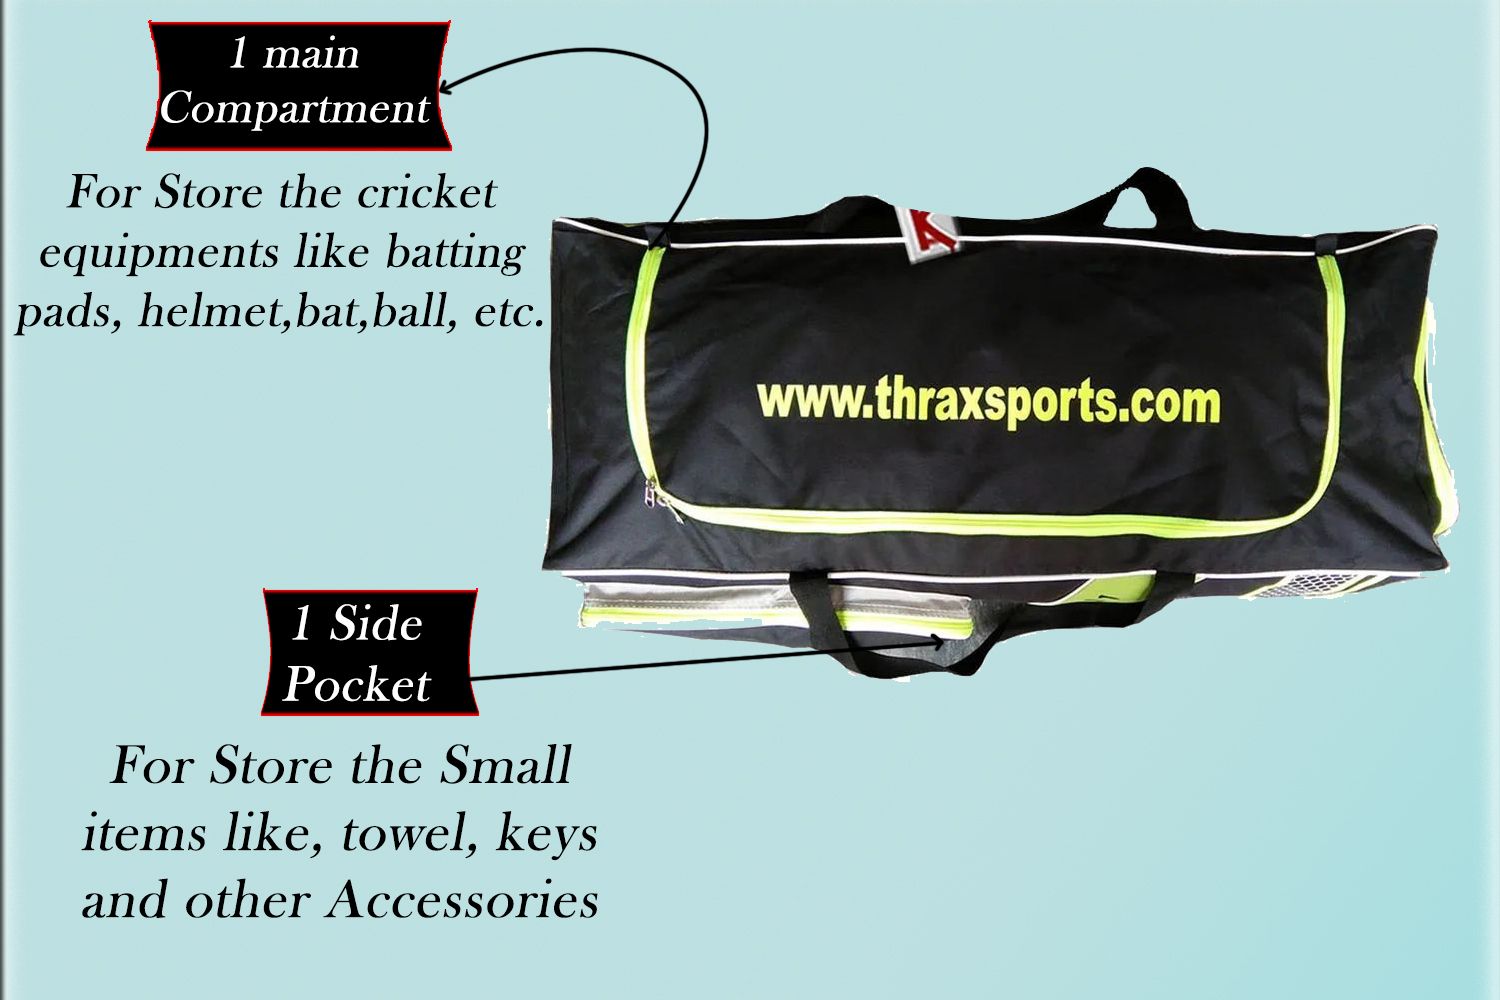 Thrax Proto 11 3 Wheel Big Cricket Kit Bag Black And Lime